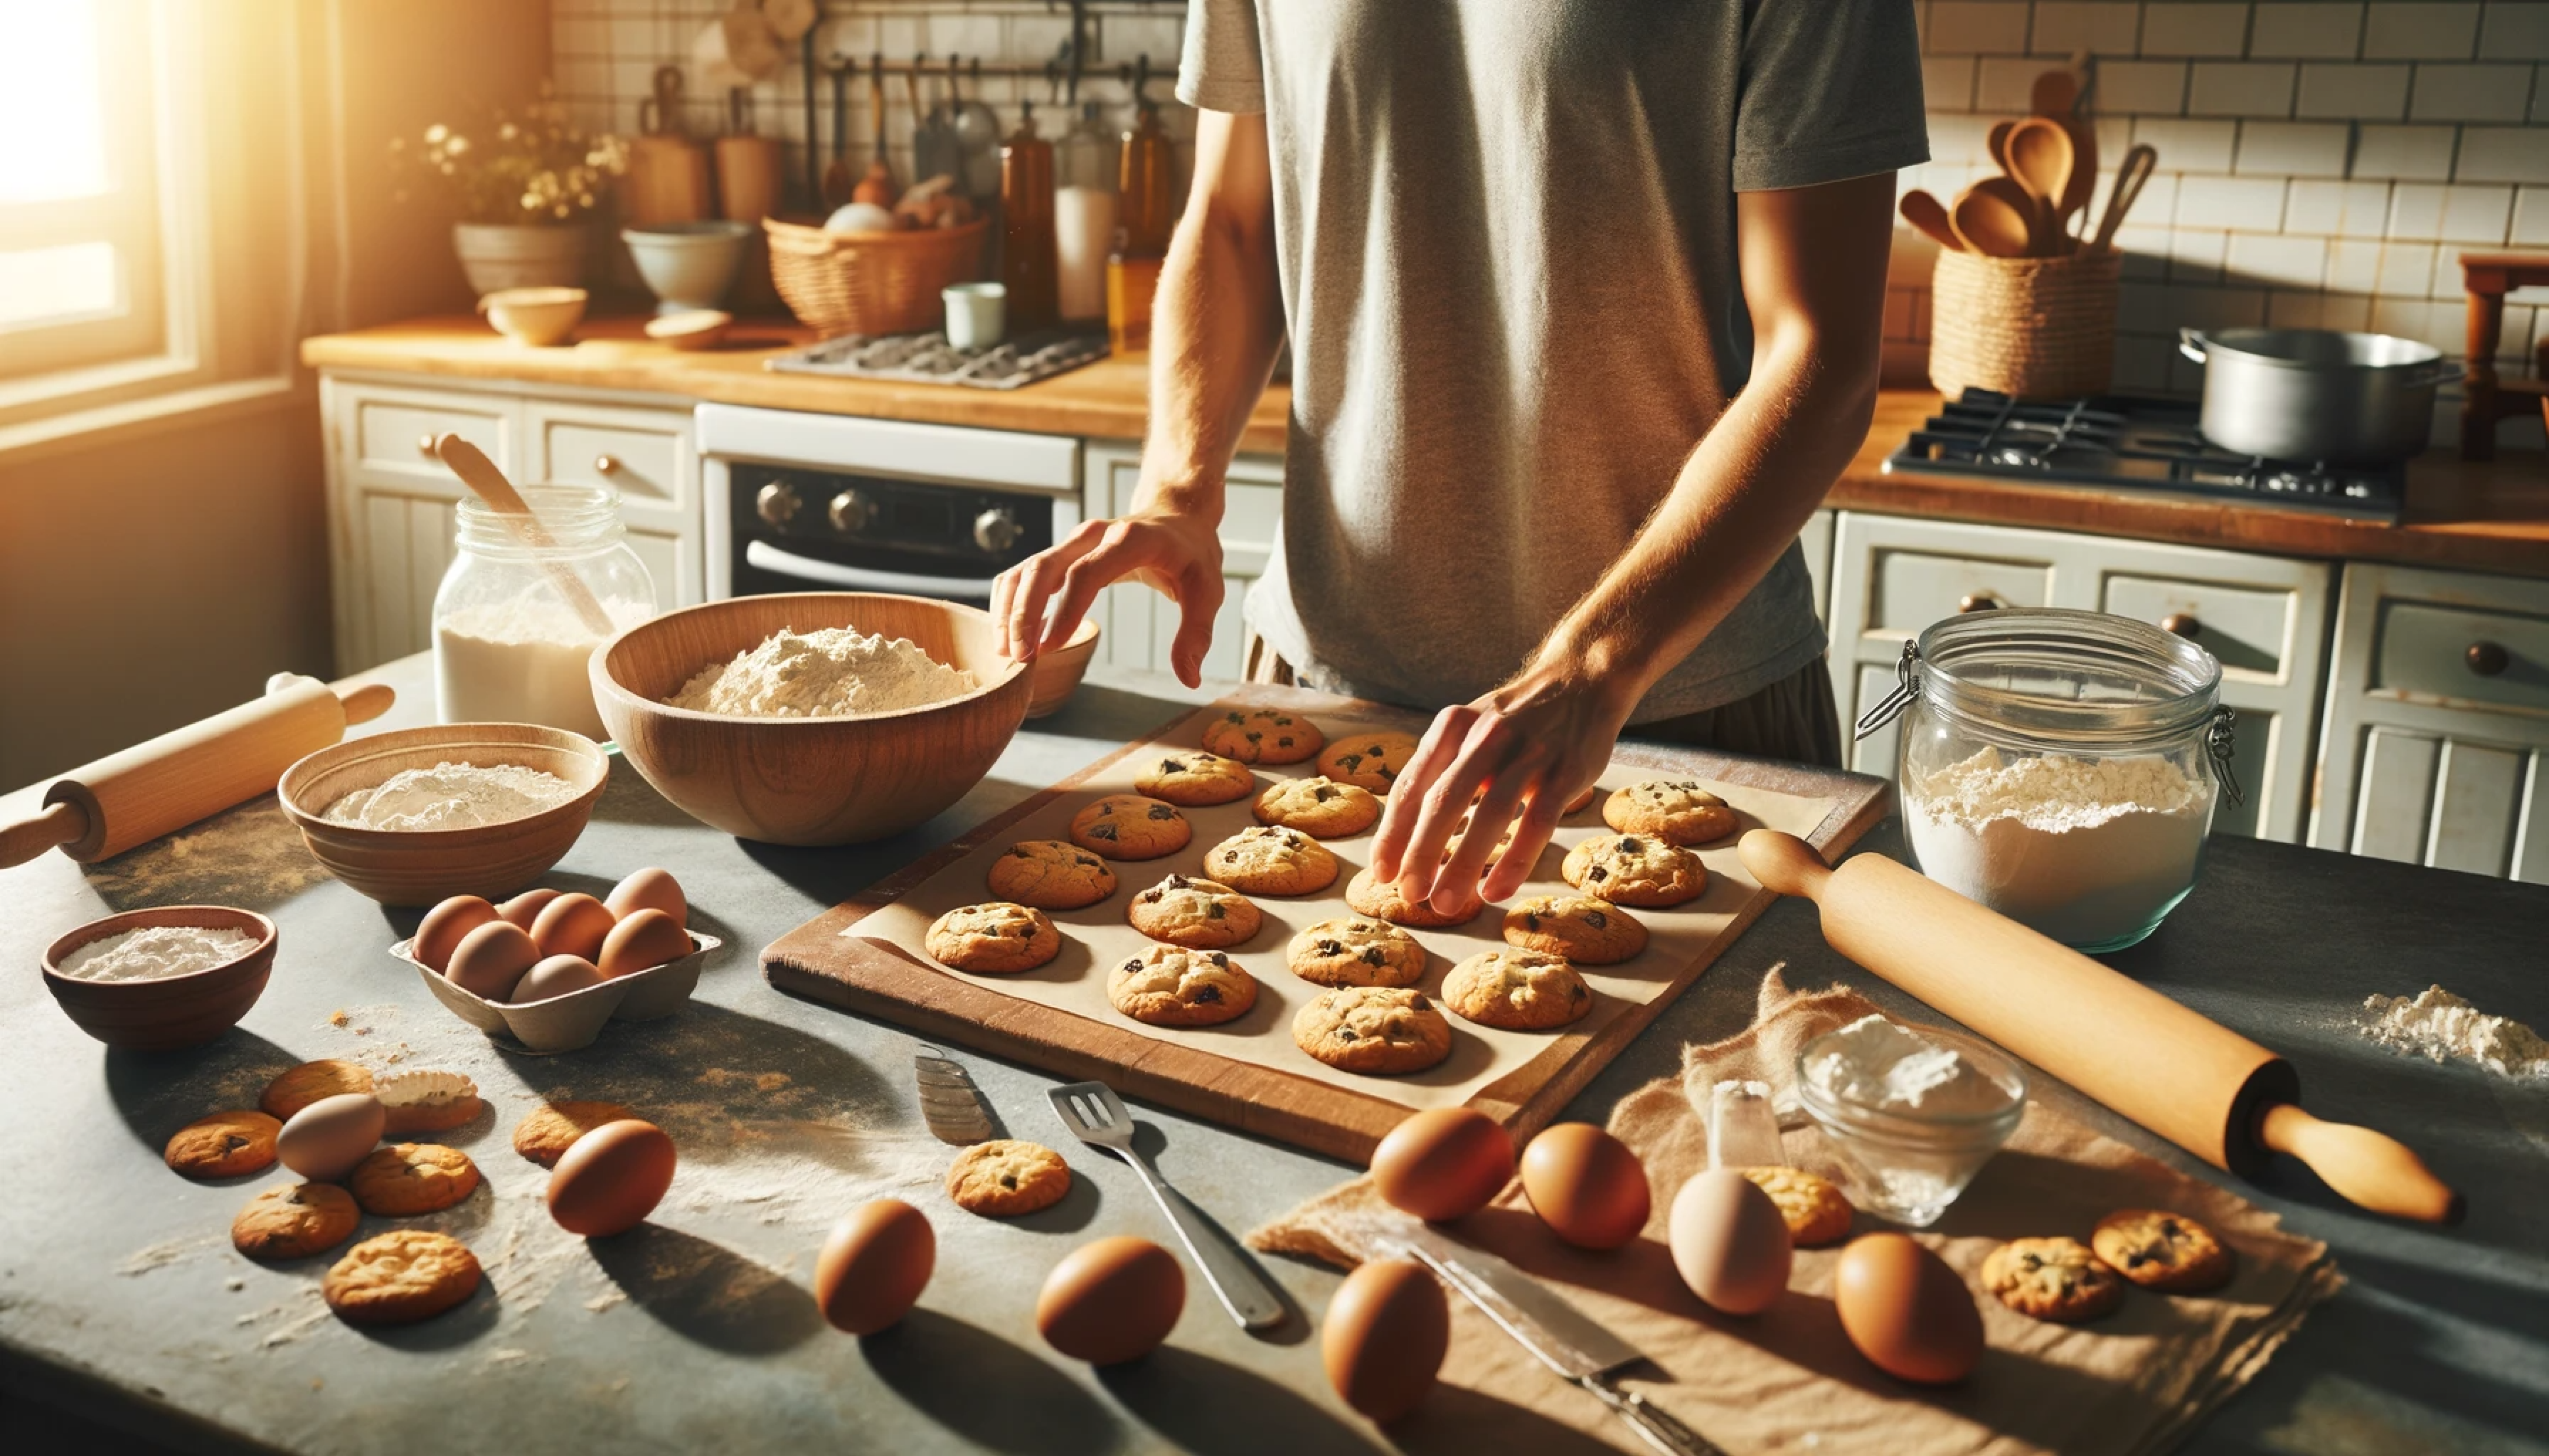 Foto de una persona colocando galletas recién horneadas en su encimera de cocina, junto a ingredientes y utensilios de cocina, para un blog de cocina casera